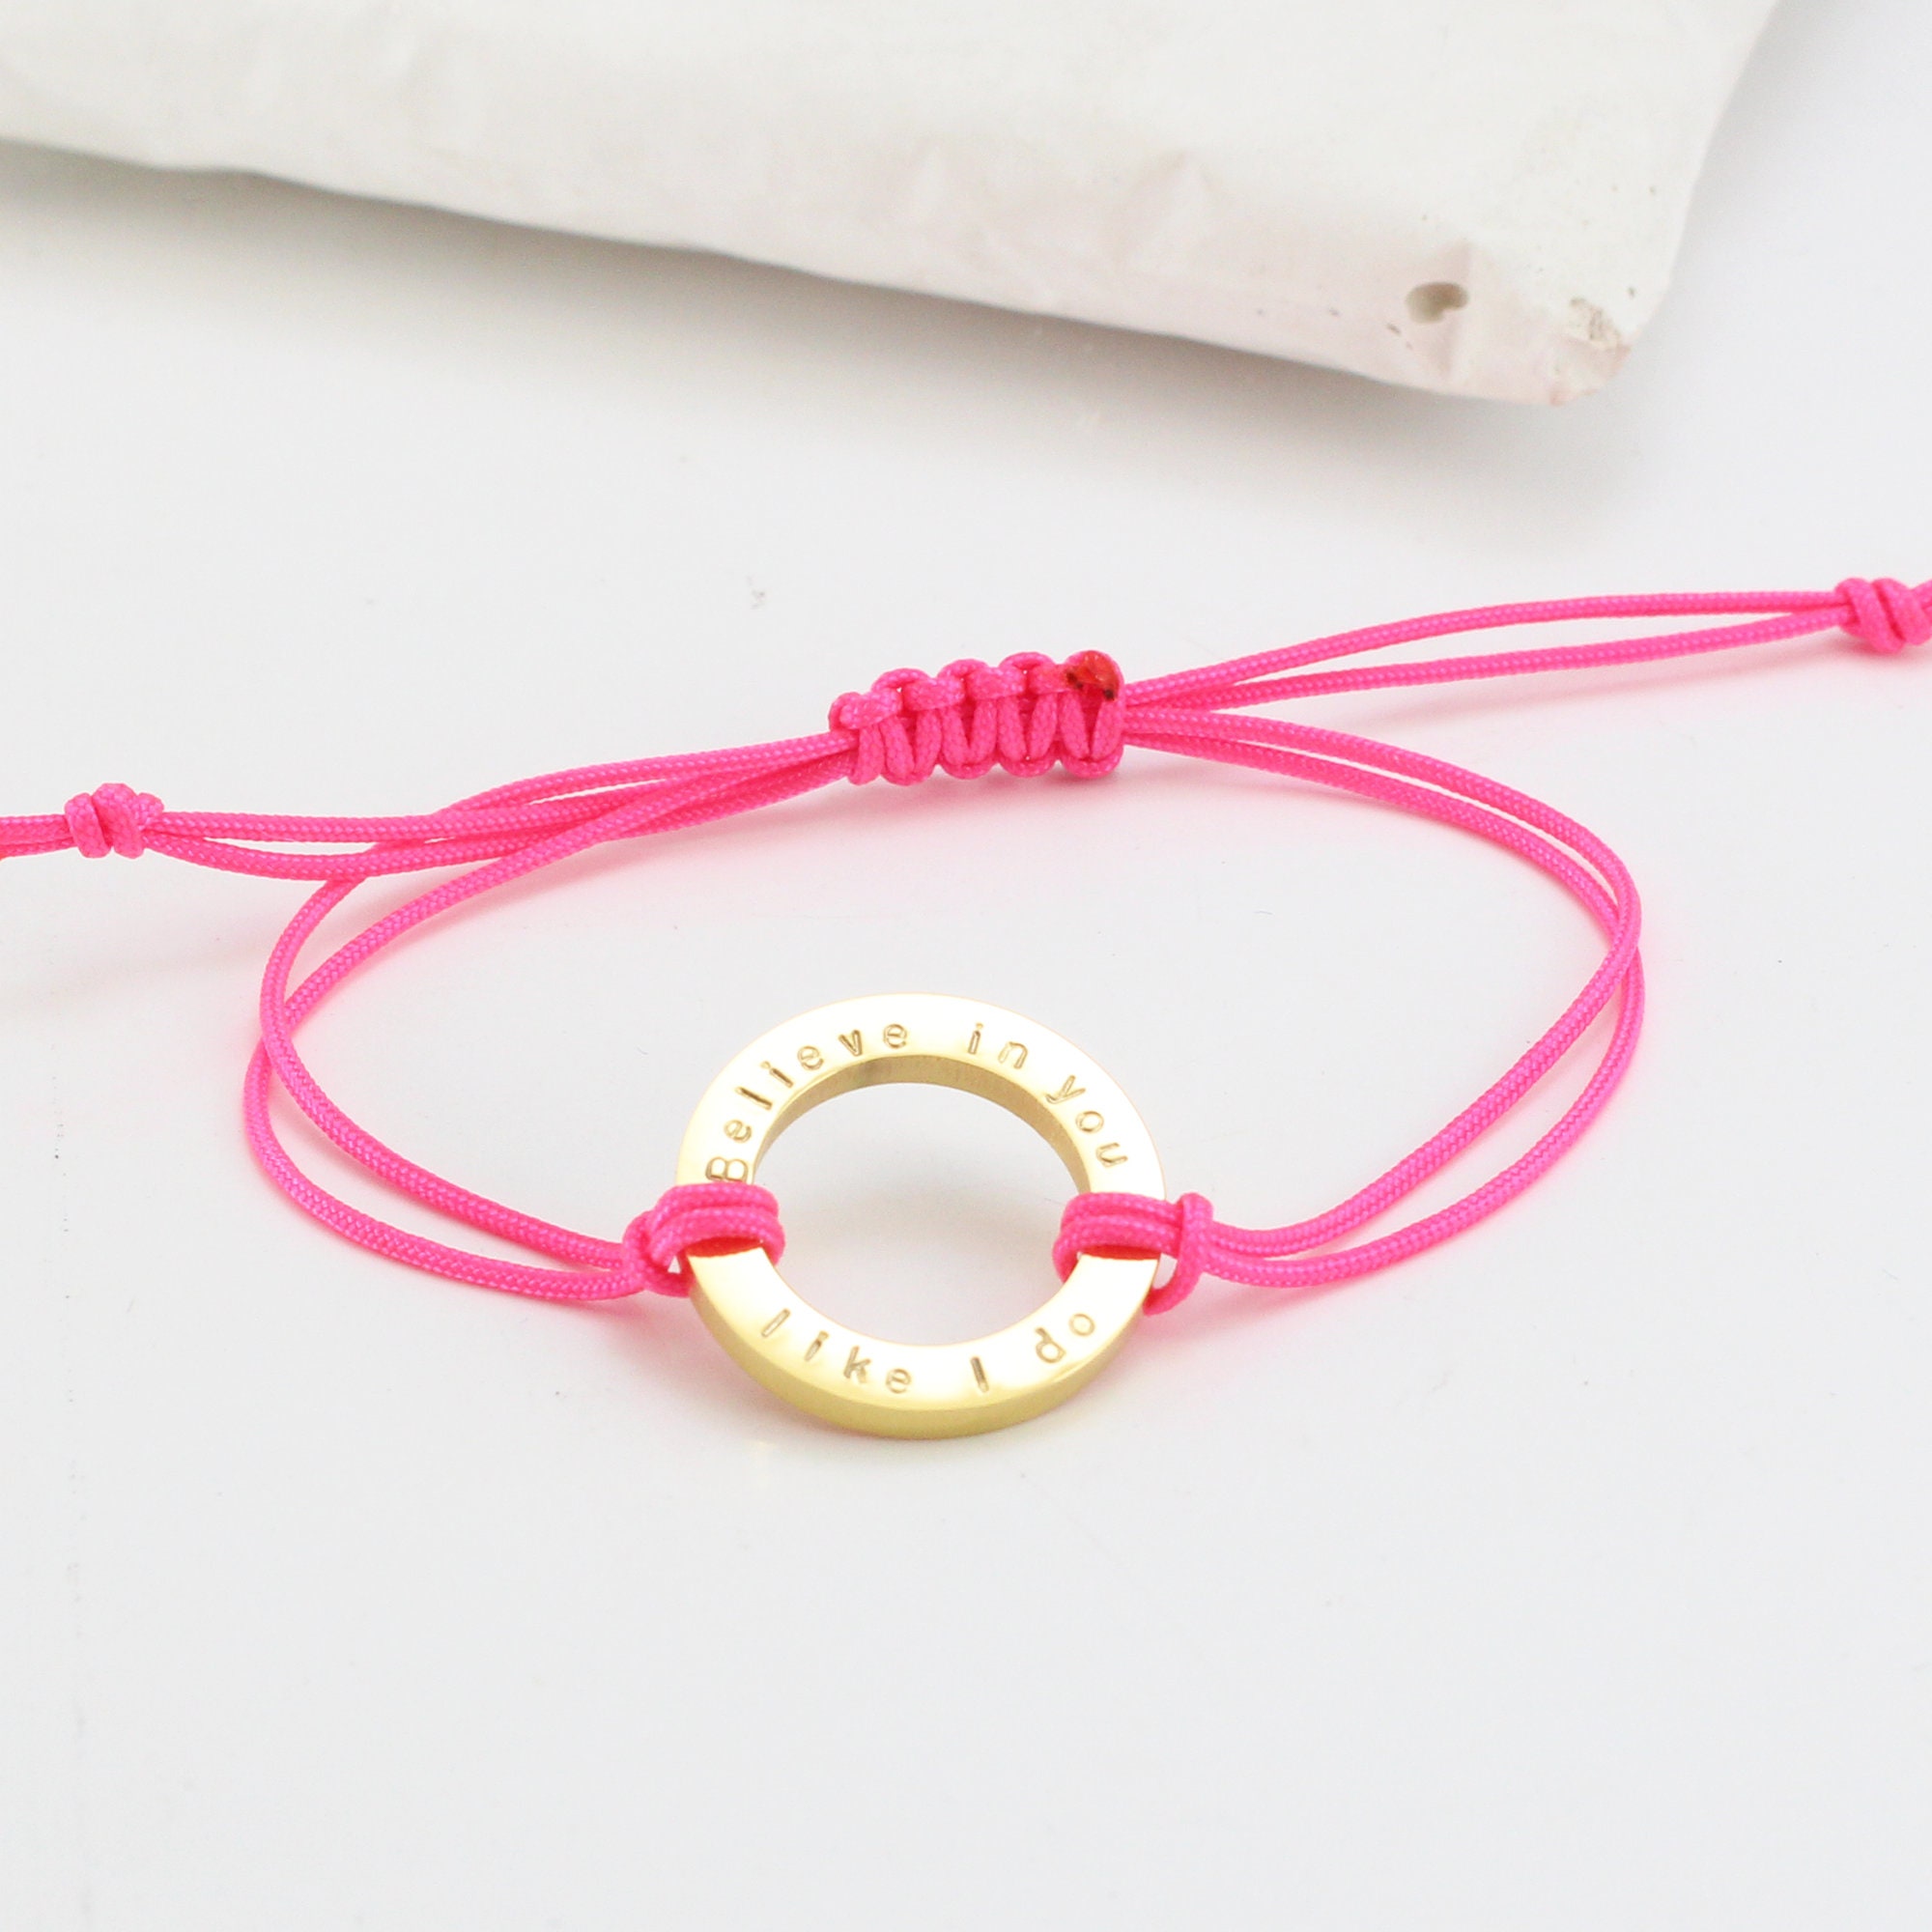 Inspirational Gift for Women Motivational Cord Bracelet - Etsy